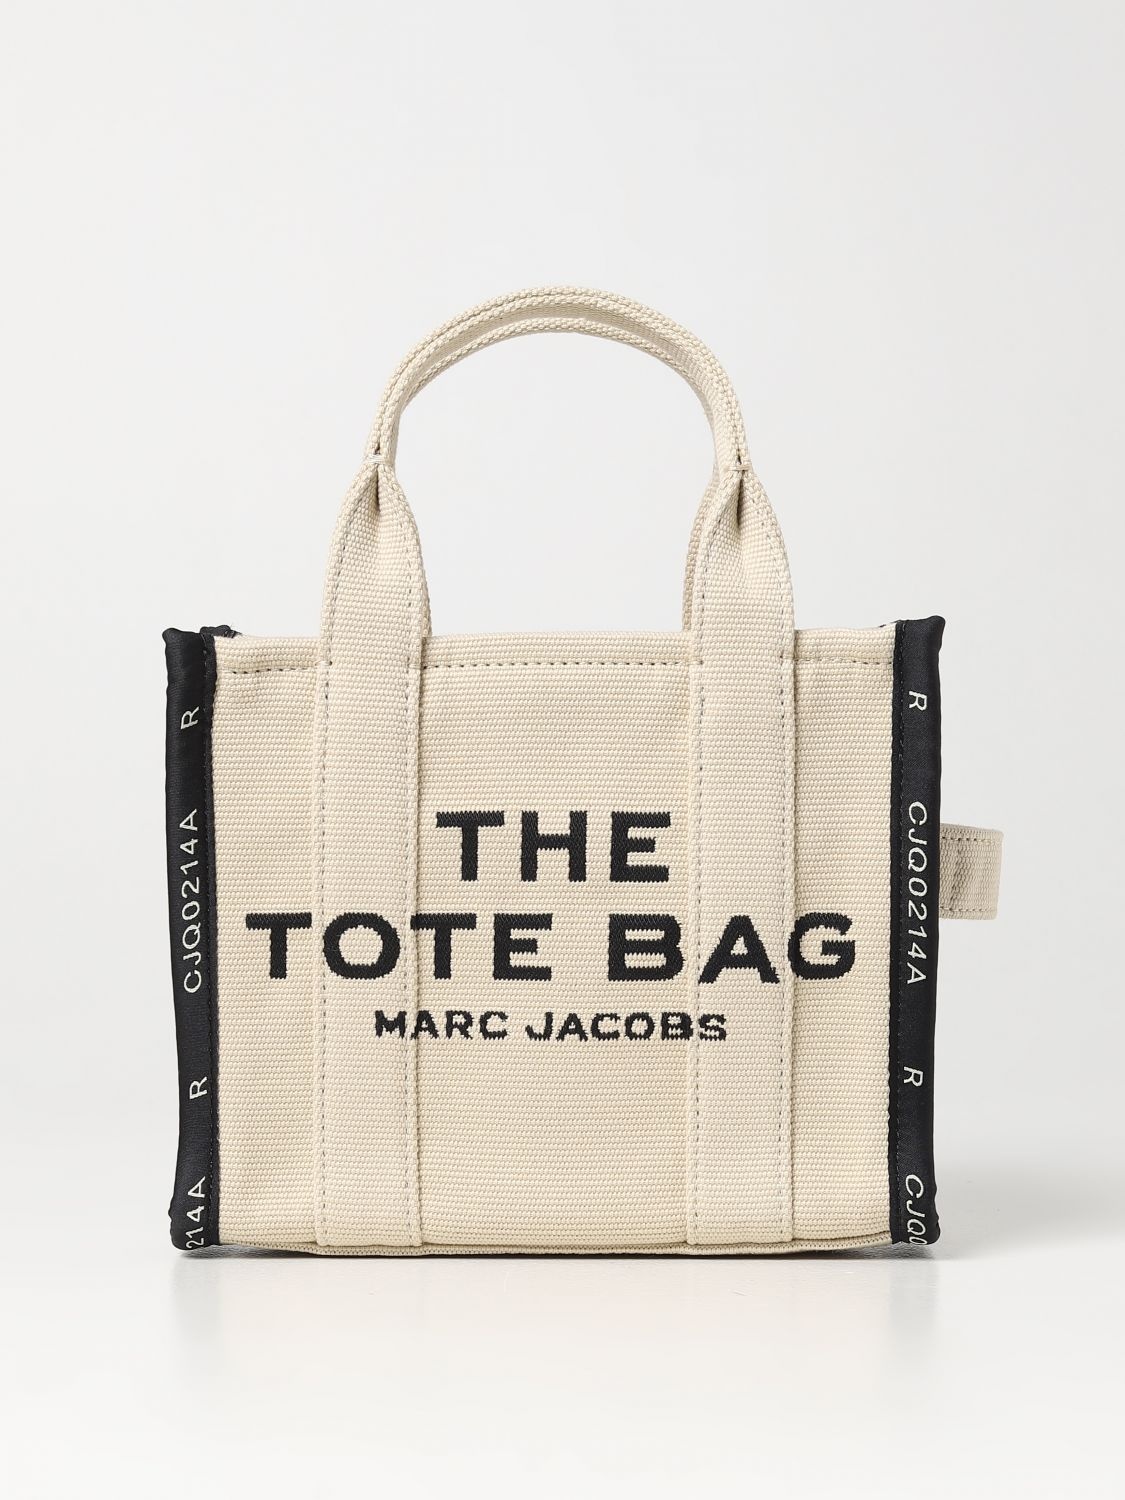 Marc Jacobs handbag for woman - 1